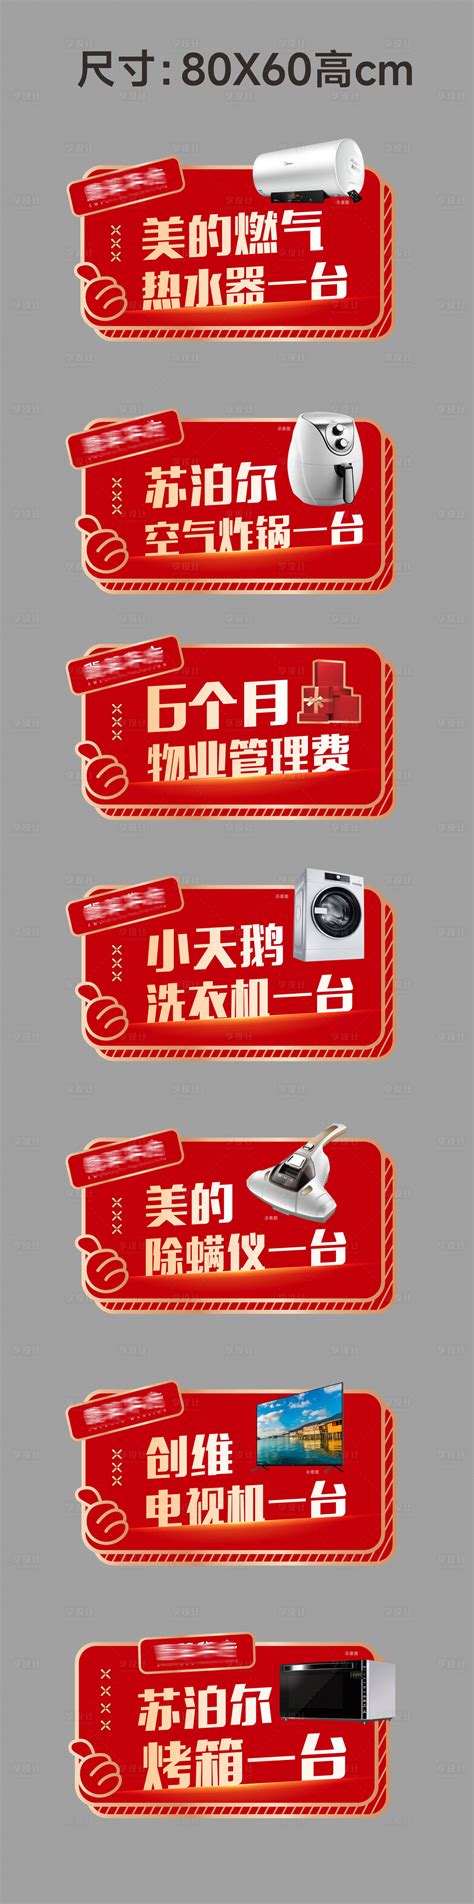 KT版展示架 - 行业案例 - 杭州挪蒙广告设计有限公司